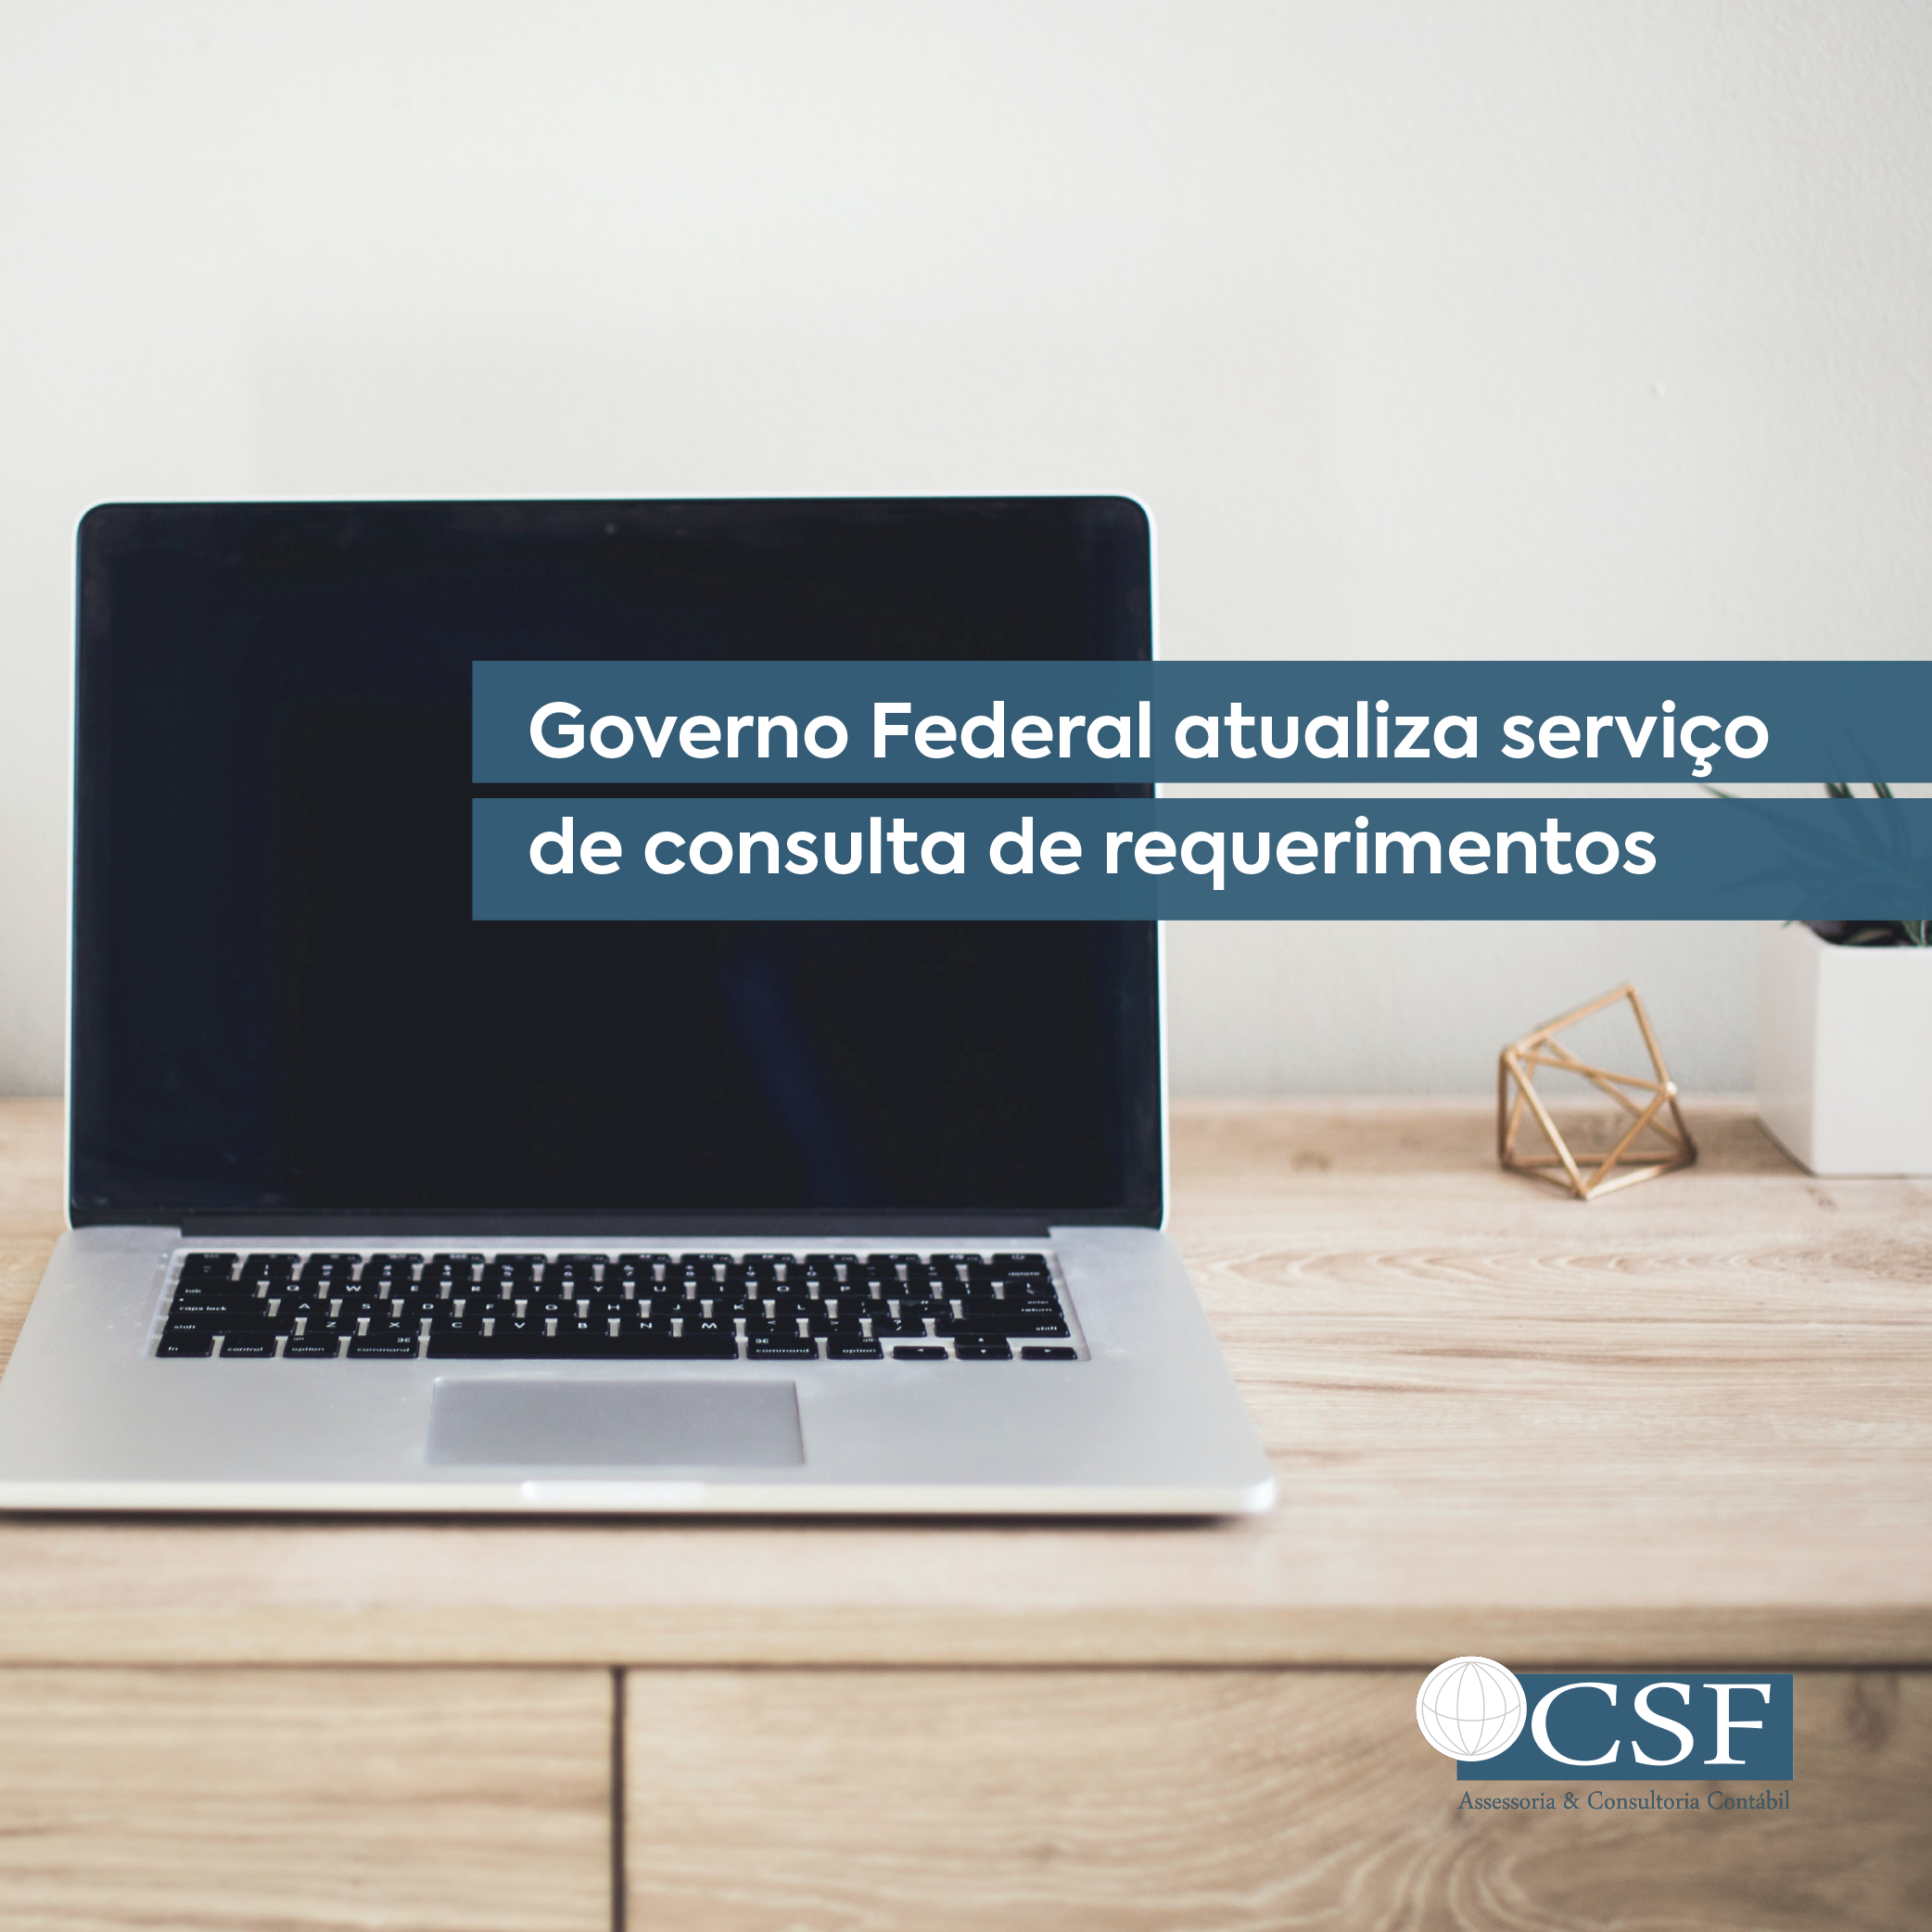 Governo Federal atualiza serviço de consulta de requerimentos